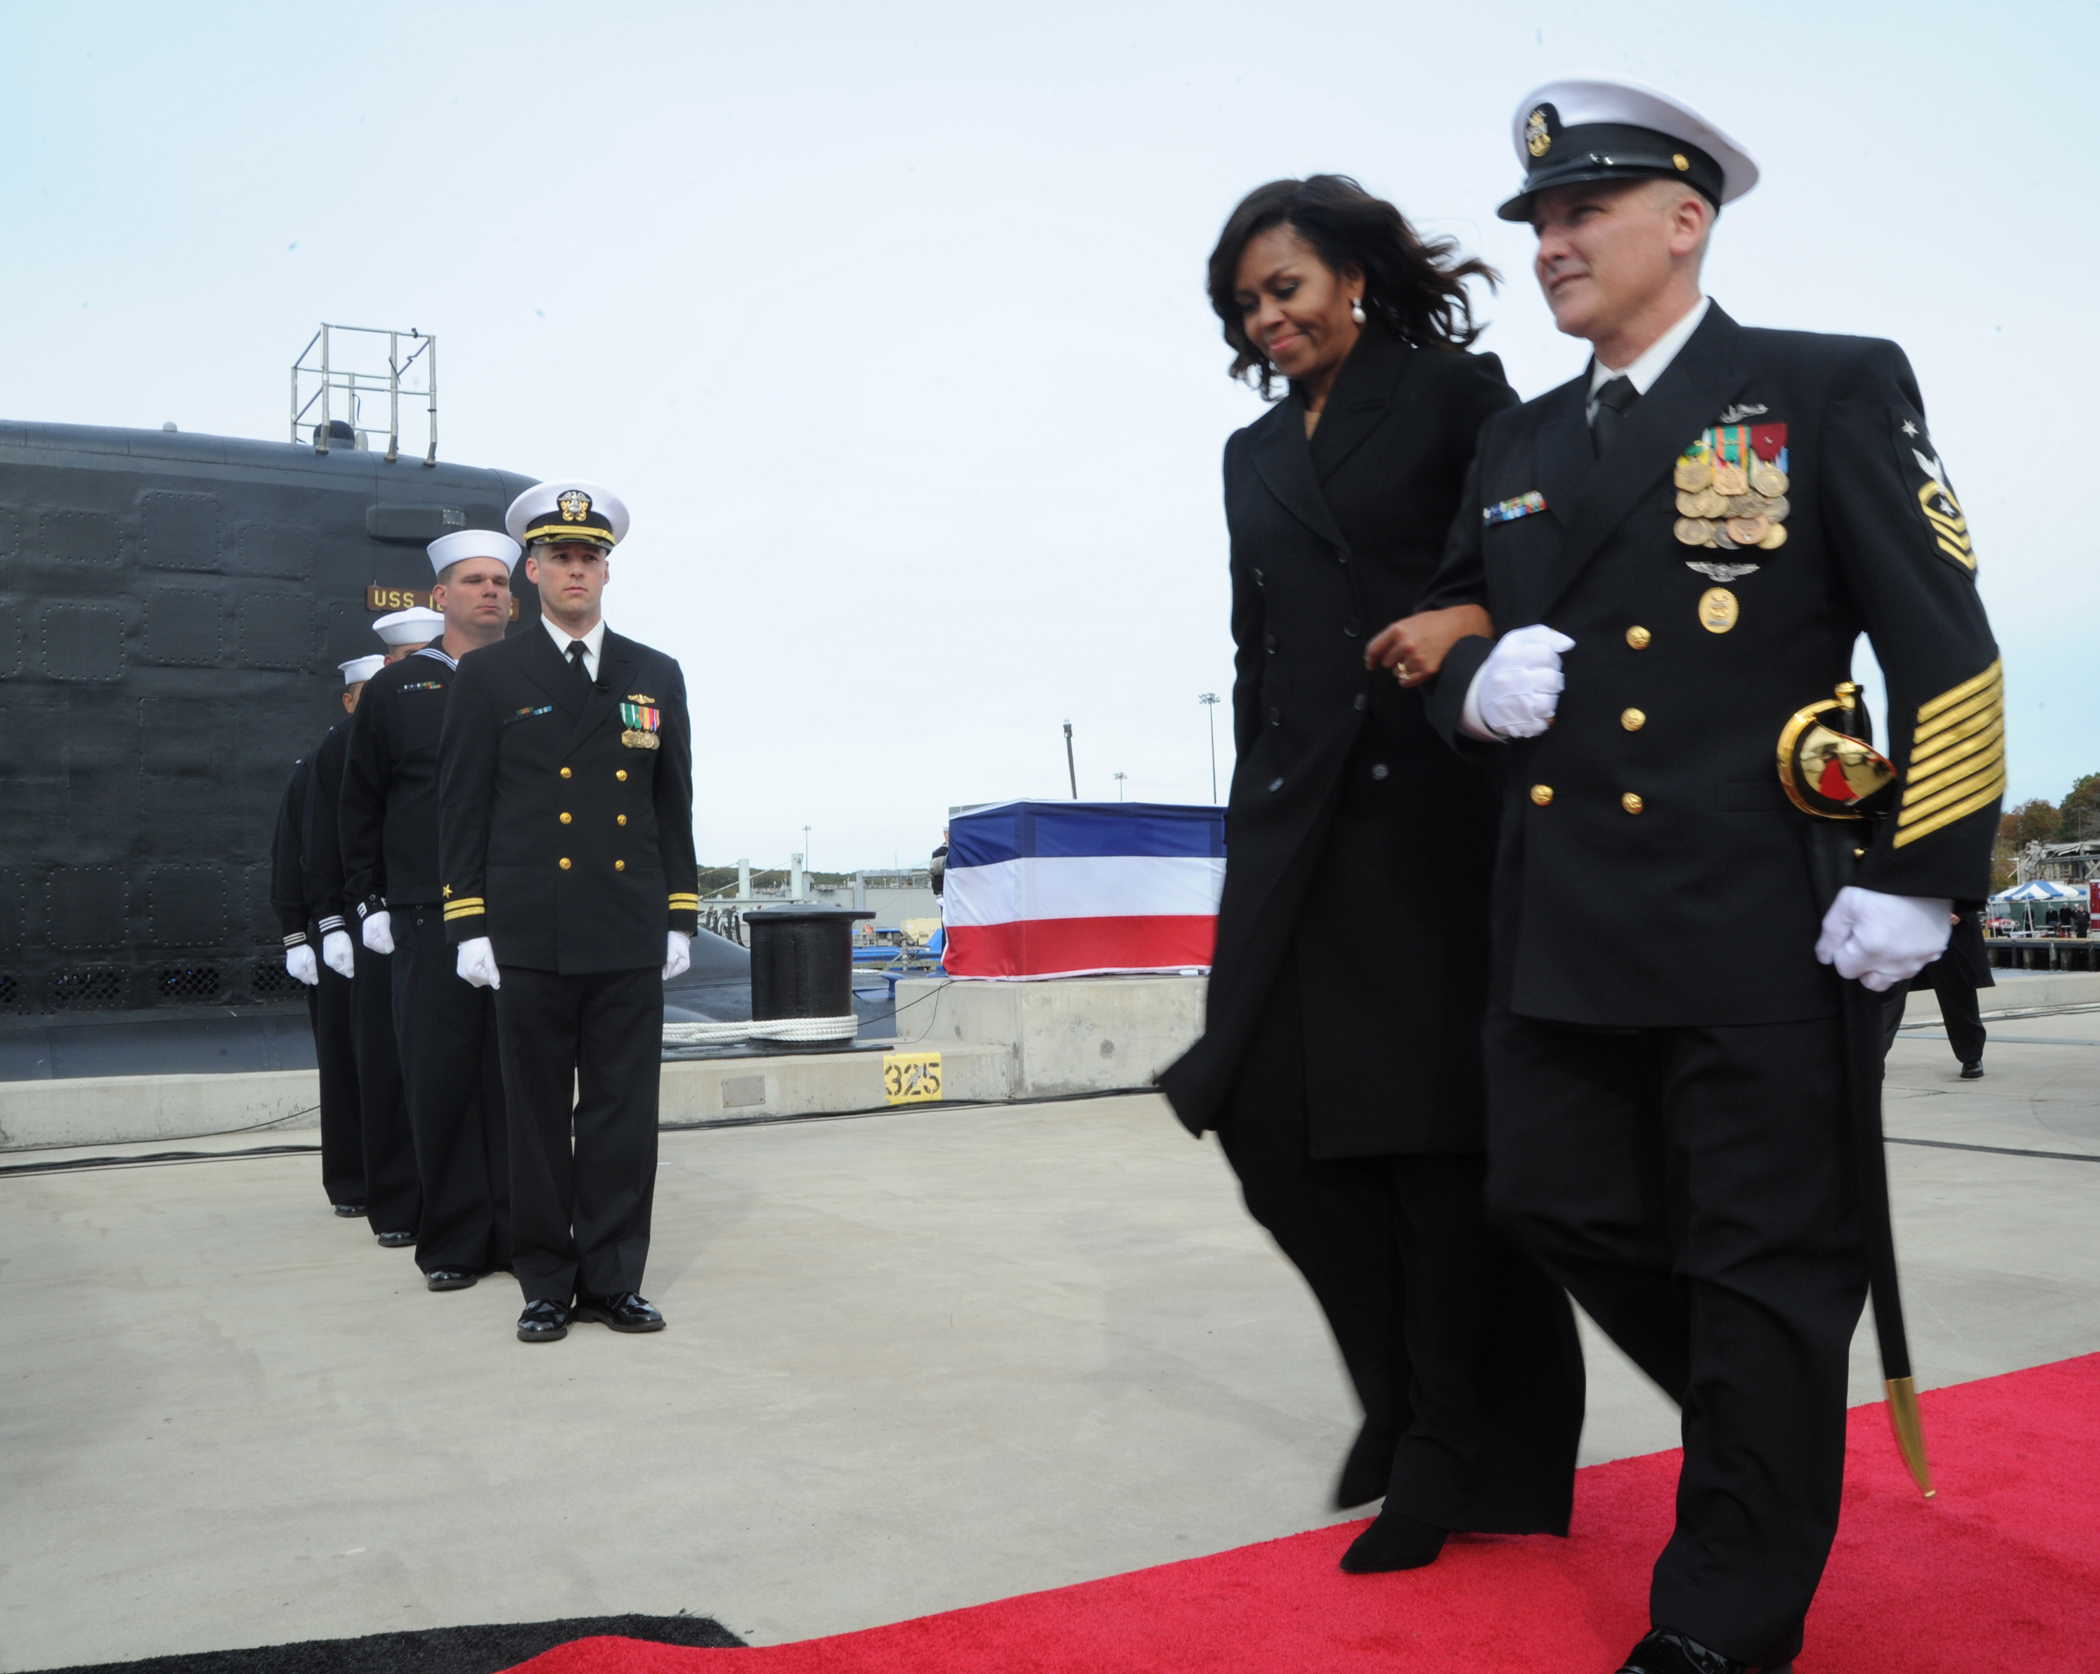 W ceremonii włączenia do służby atomowego okrętu podwodnego USS Illinois (SSN-786) wzięła udział pierwsza dama, Michelle Obama.  (U.S. Navy photo by Chief Petty Officer Darryl I. Wood/Released)